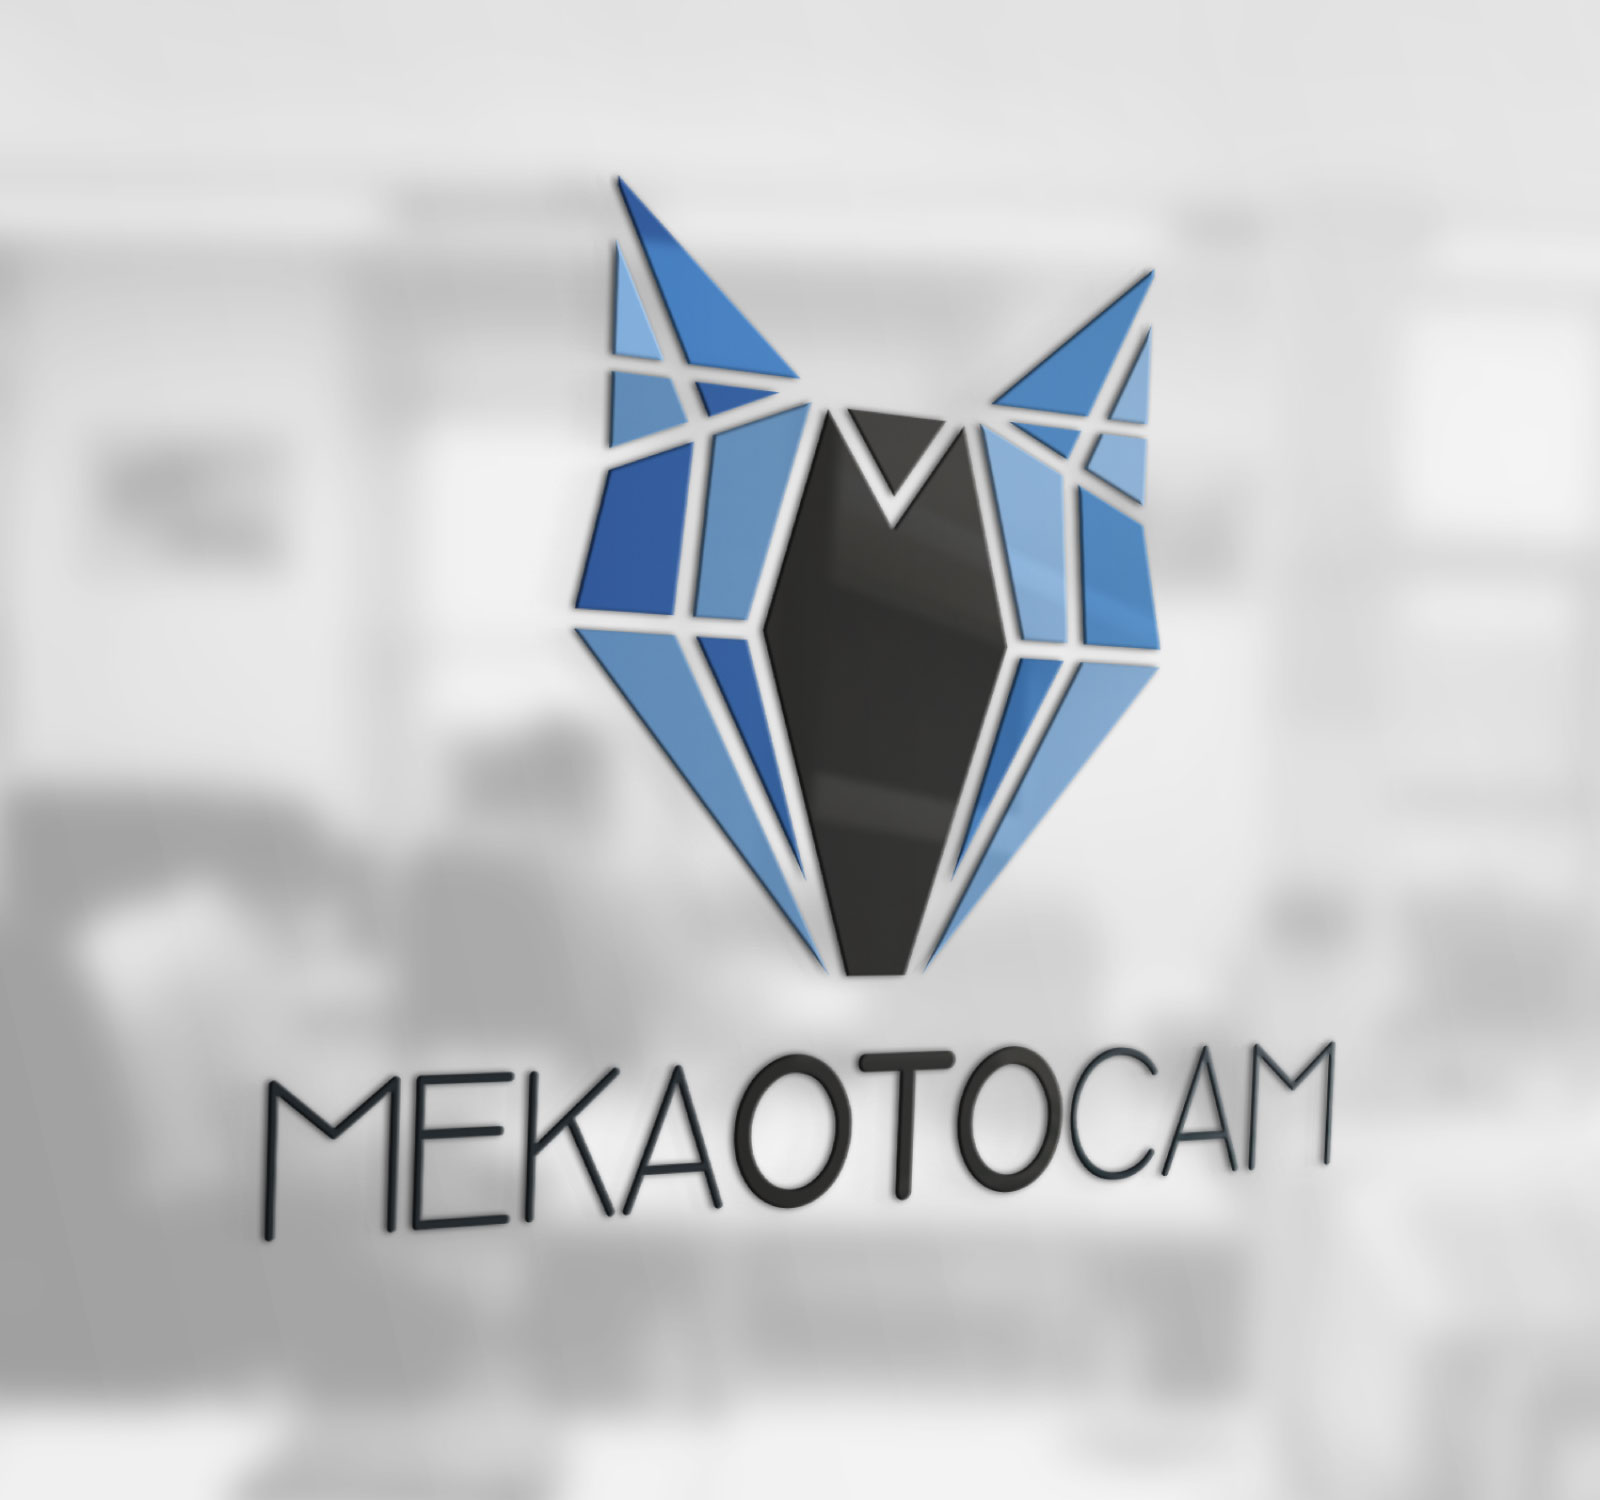 mekaotocam logo